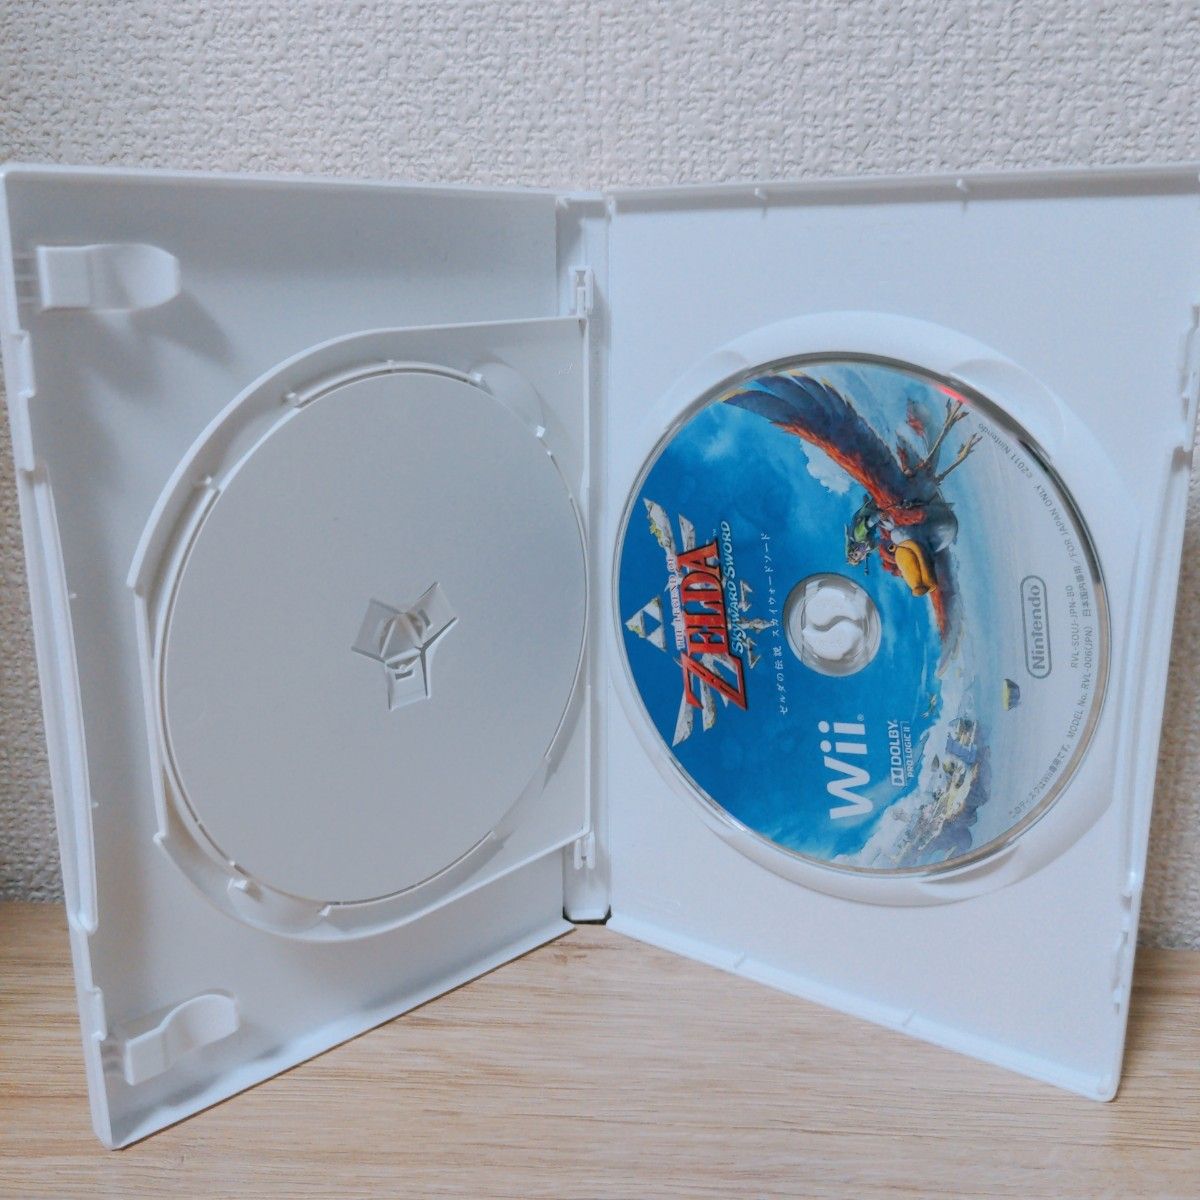 【Wii】 ゼルダの伝説 スカイウォードソード [通常版］ 取説なし、スペシャルCDなし